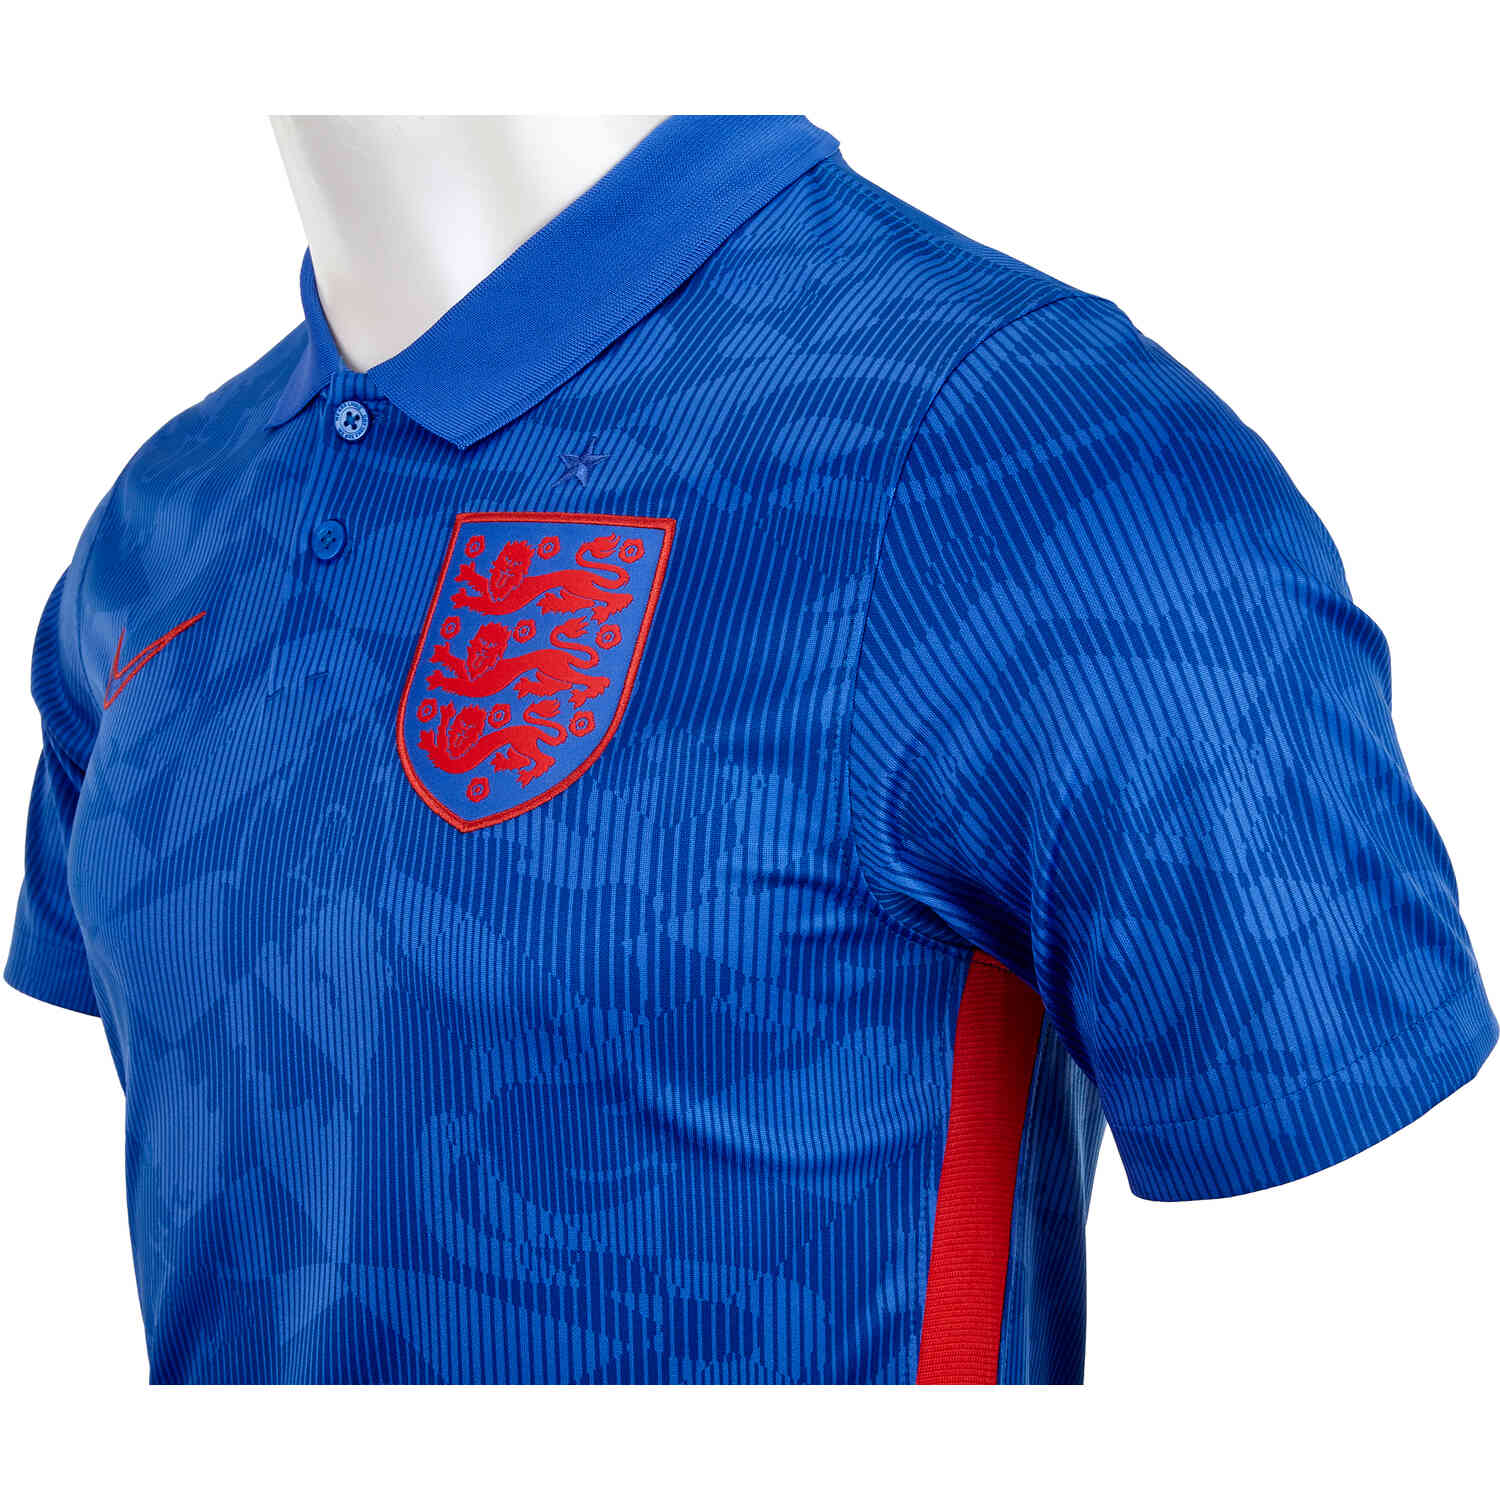 2020 Kids Nike England Away Jersey - SoccerPro